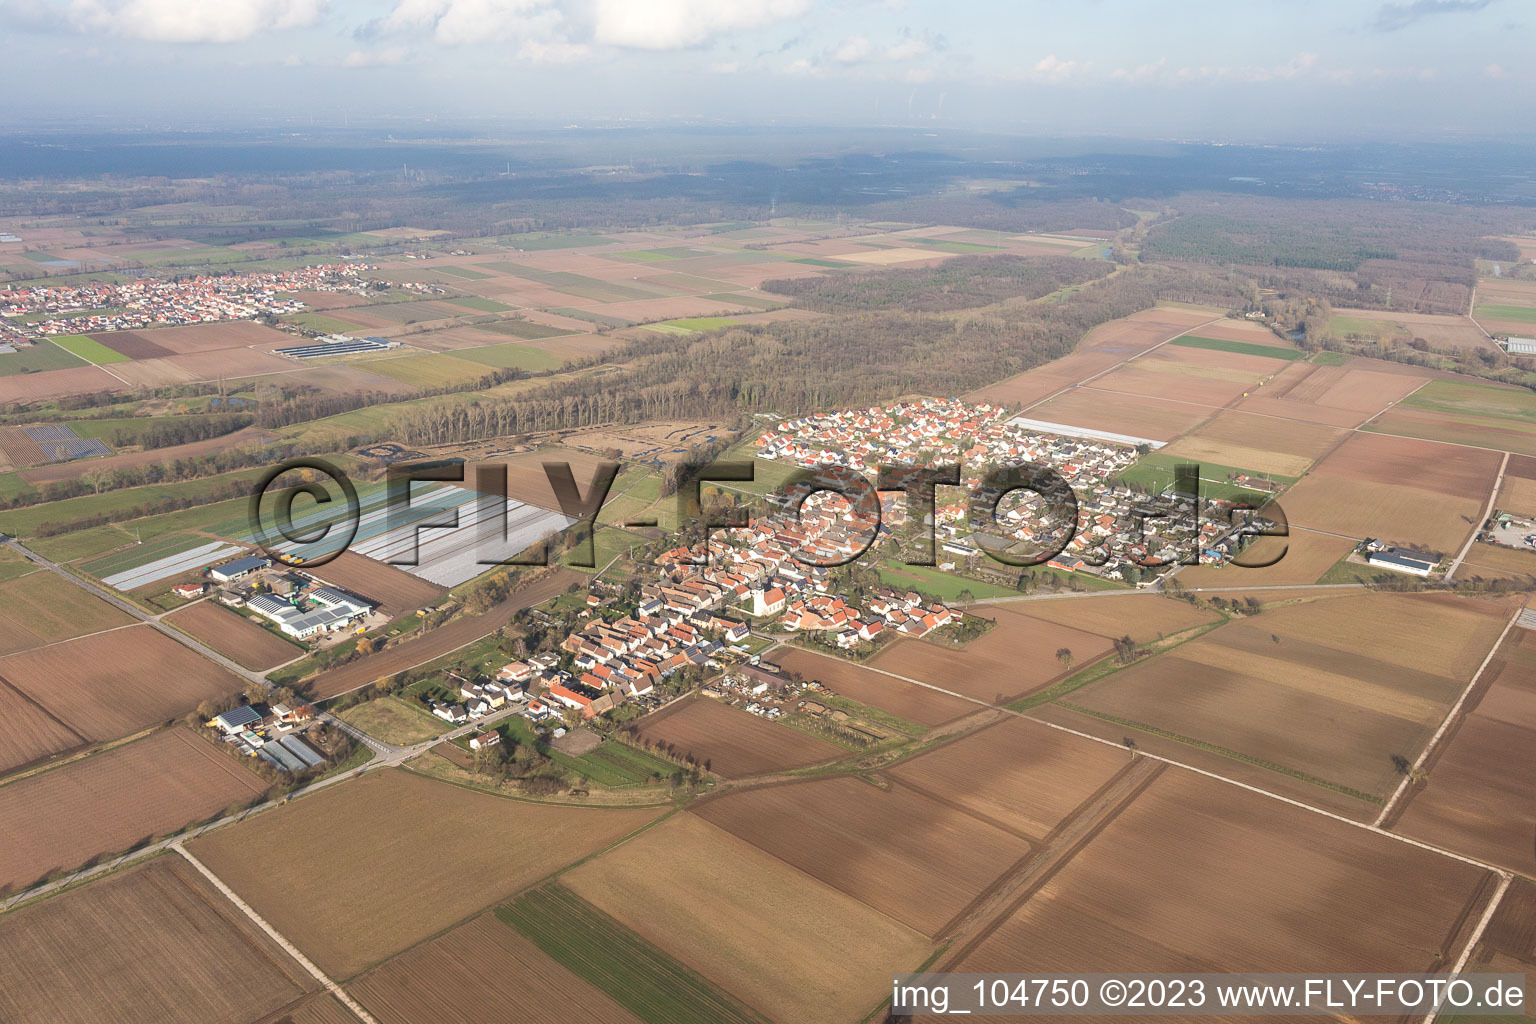 Freisbach im Bundesland Rheinland-Pfalz, Deutschland von oben gesehen